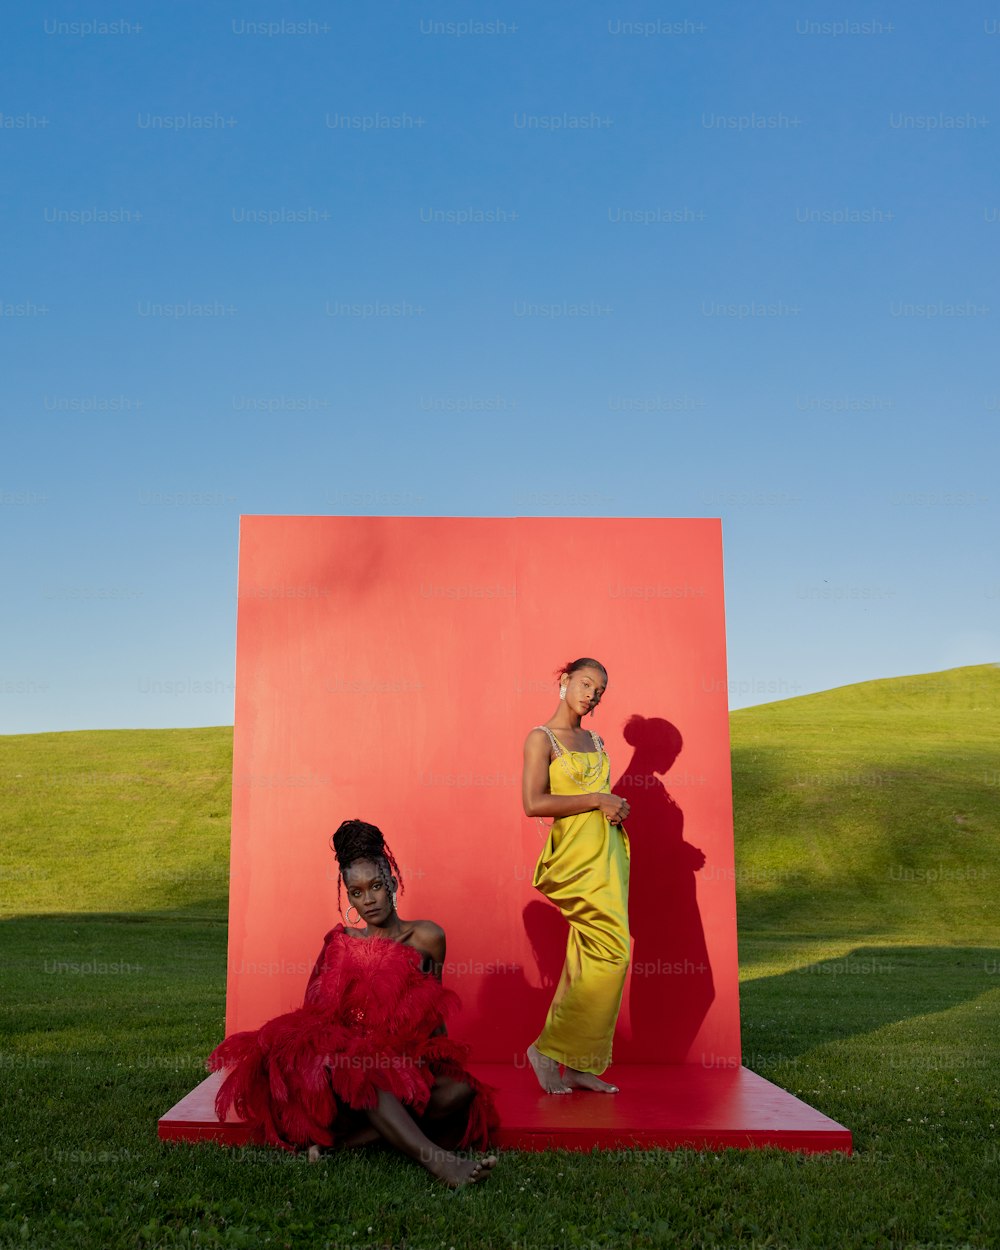 Eine Frau in einem gelben Kleid sitzt neben einer Frau in einem roten Kleid